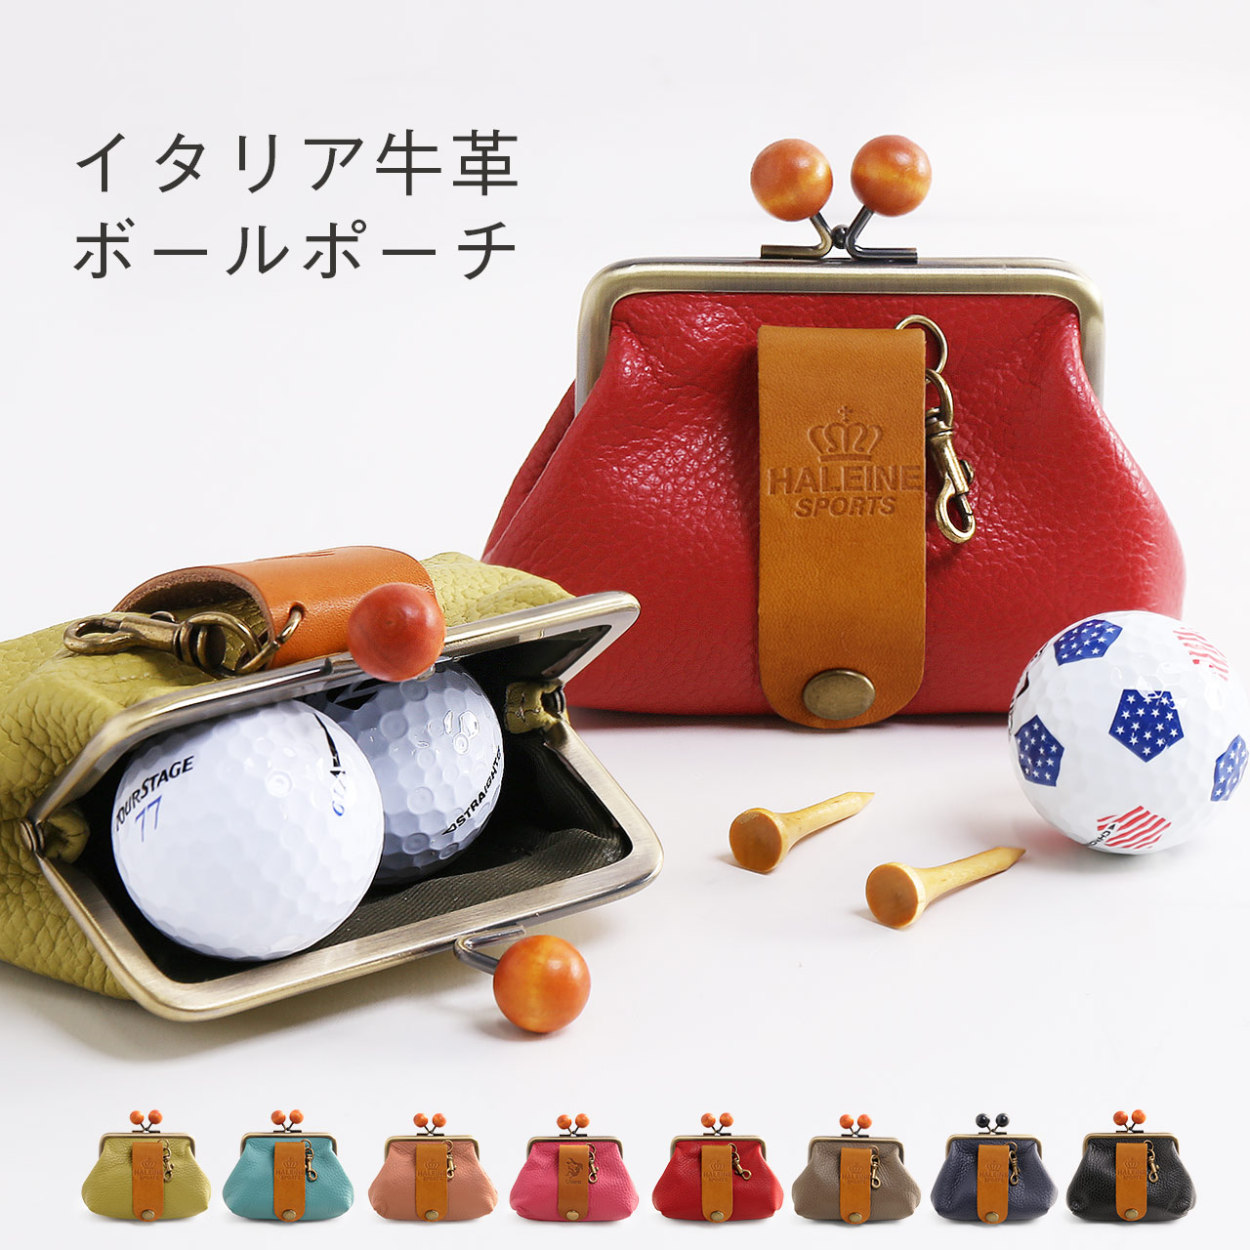 ゴルフ ボールホルダー ボールケース ティーケース レディース 本革ゴルフ用品 コンパクト 収納ケース 日本製 (07000279-cc-1r)